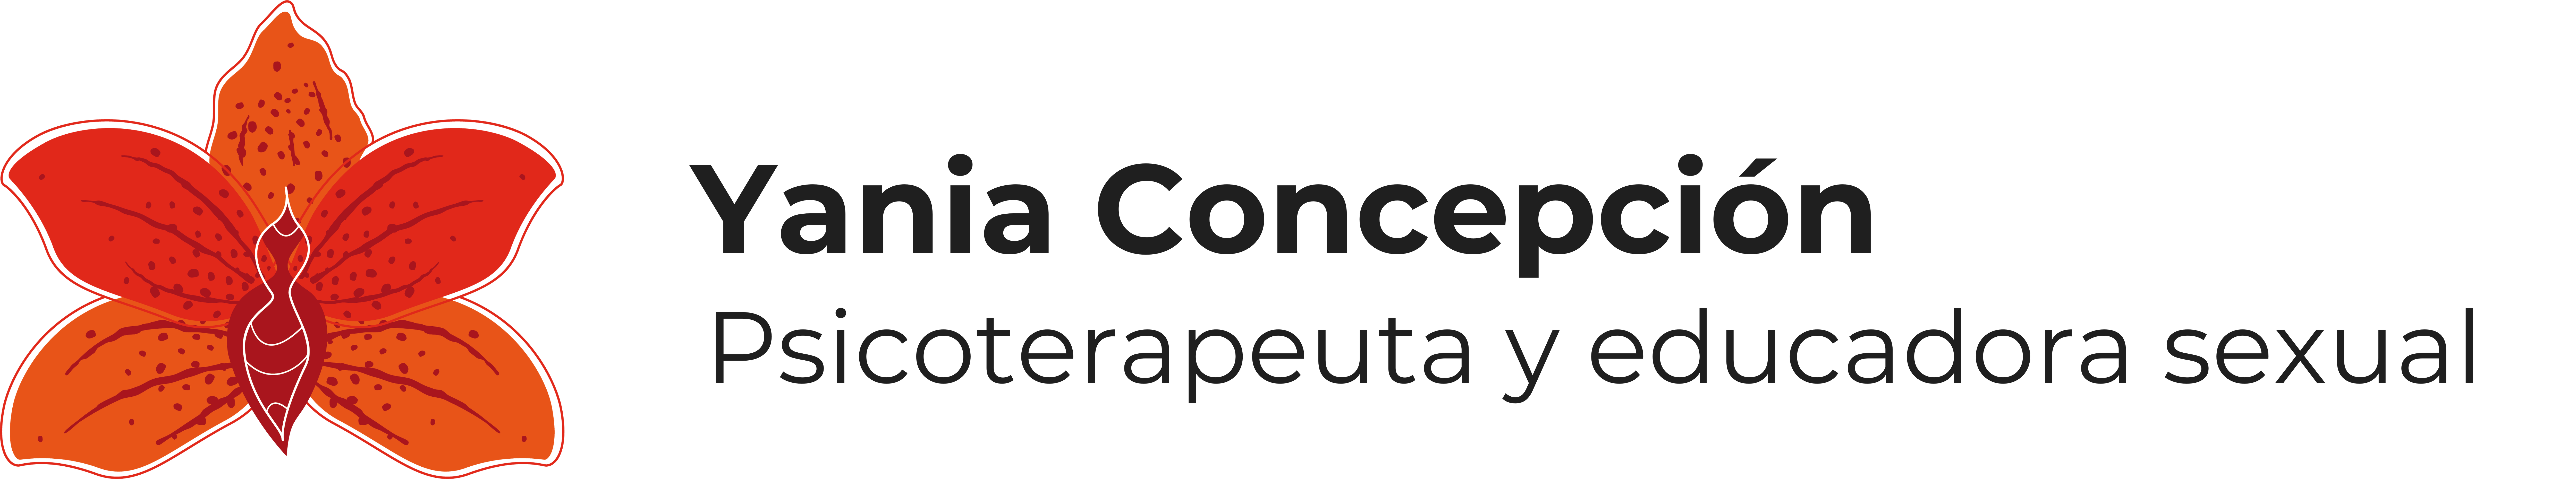 Yania Concepción logo